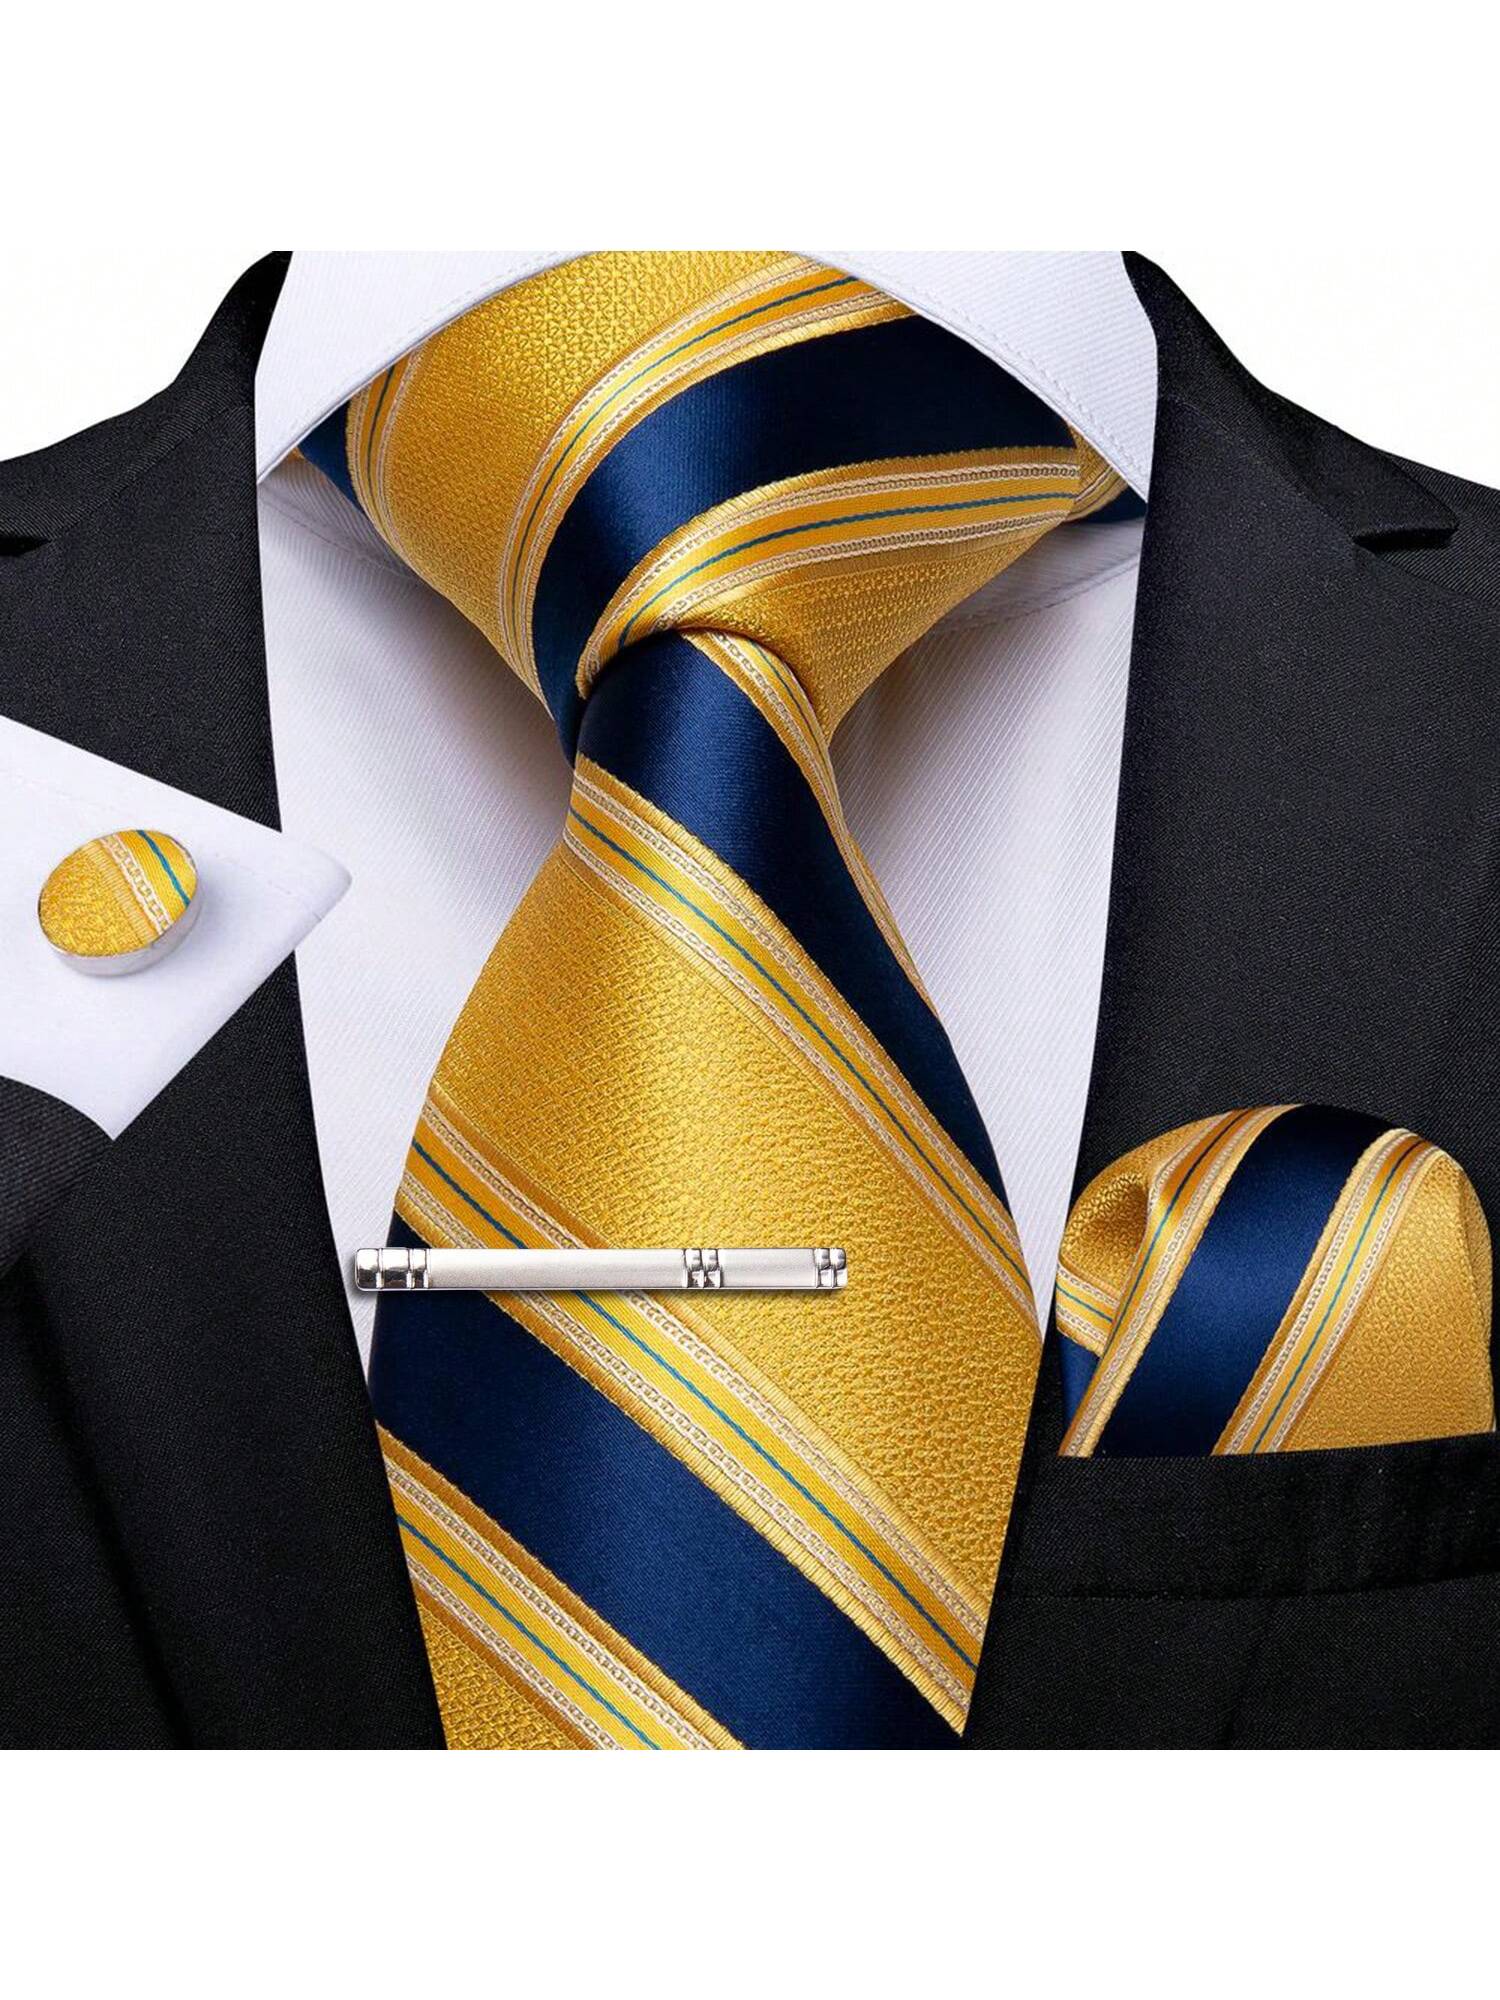 запонки синий черный DiBanGu мужской галстук шелковый красный синий однотонный свадебный галстук карманные квадратные запонки зажим набор Пейсли, желтый